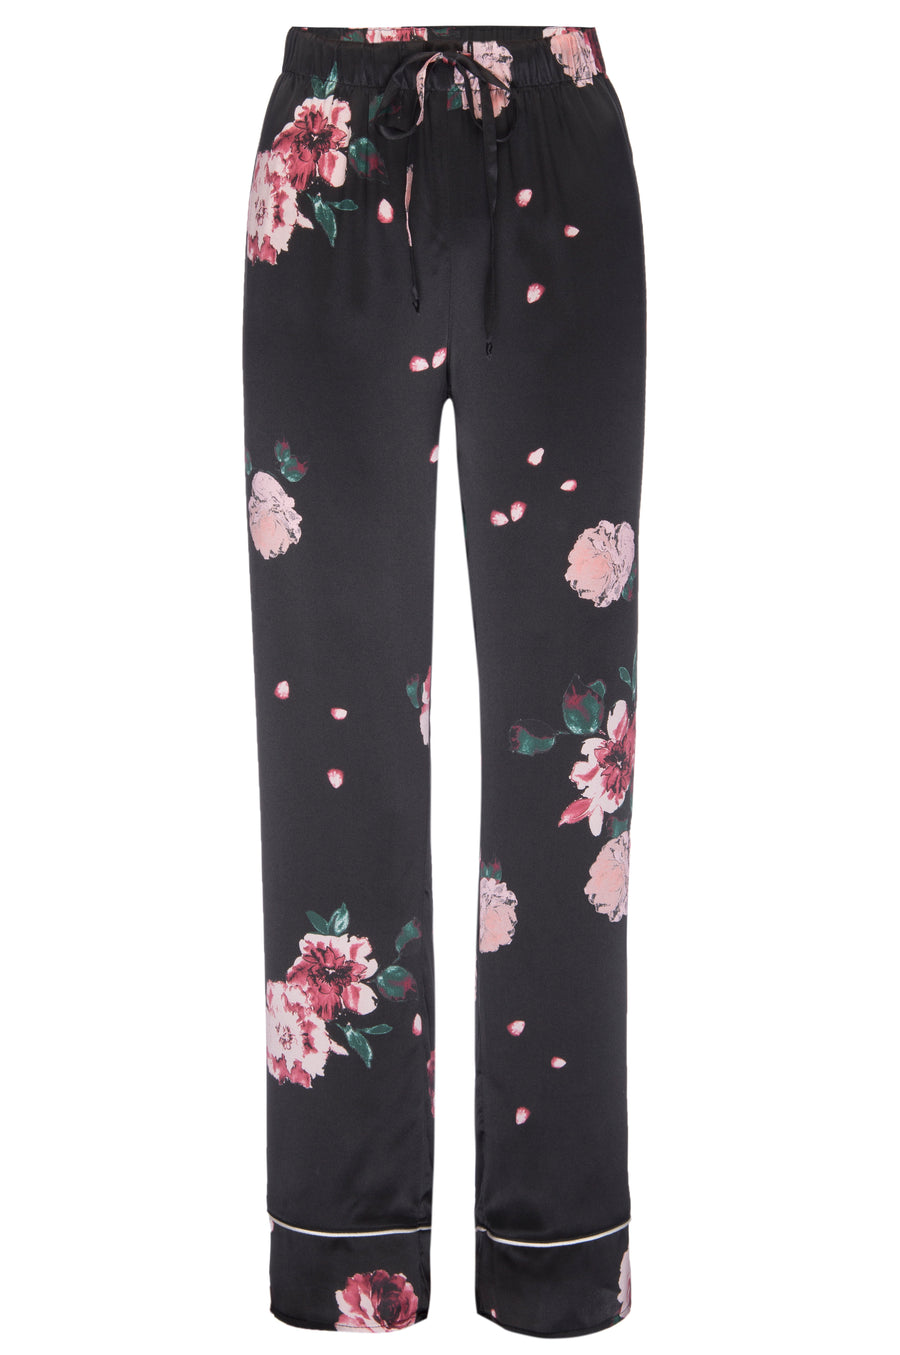 Vintage Rose Printed Silk Pajama Pants Selected by Picky Jane